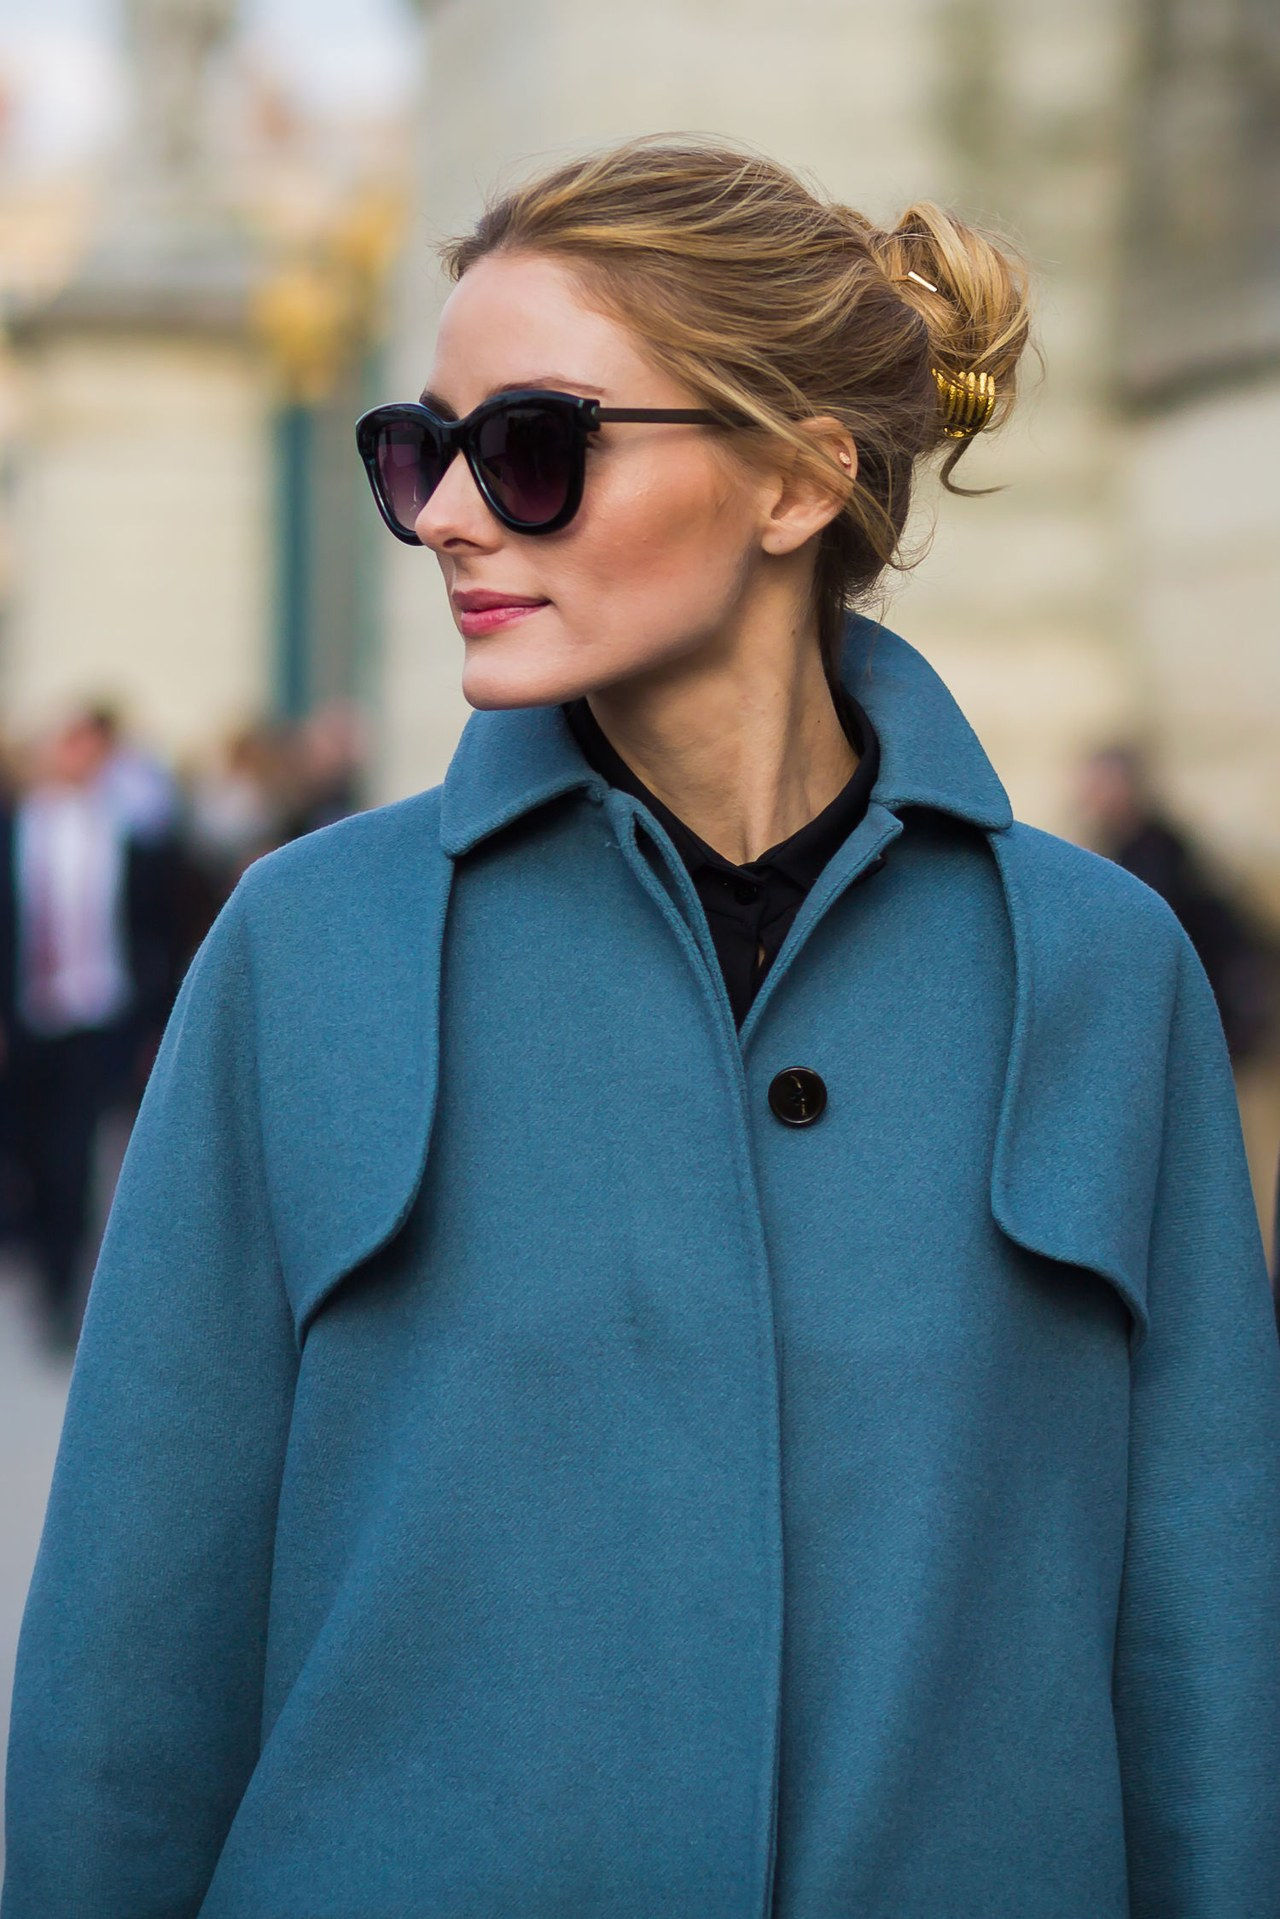 法国 girl essentials olivia palermo sunglasses